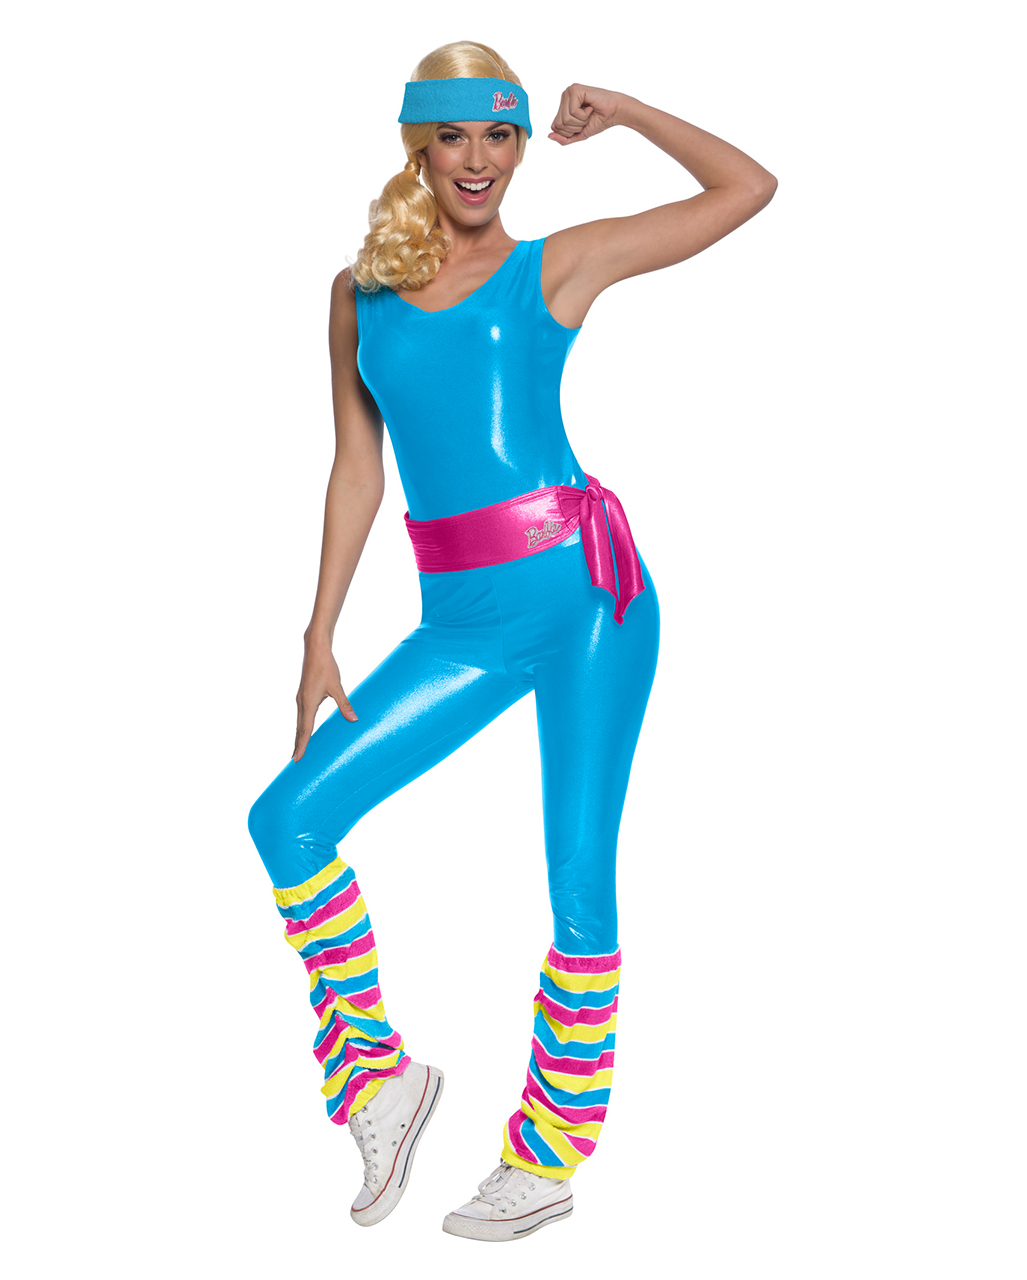 Barbie Aerobics Costume order